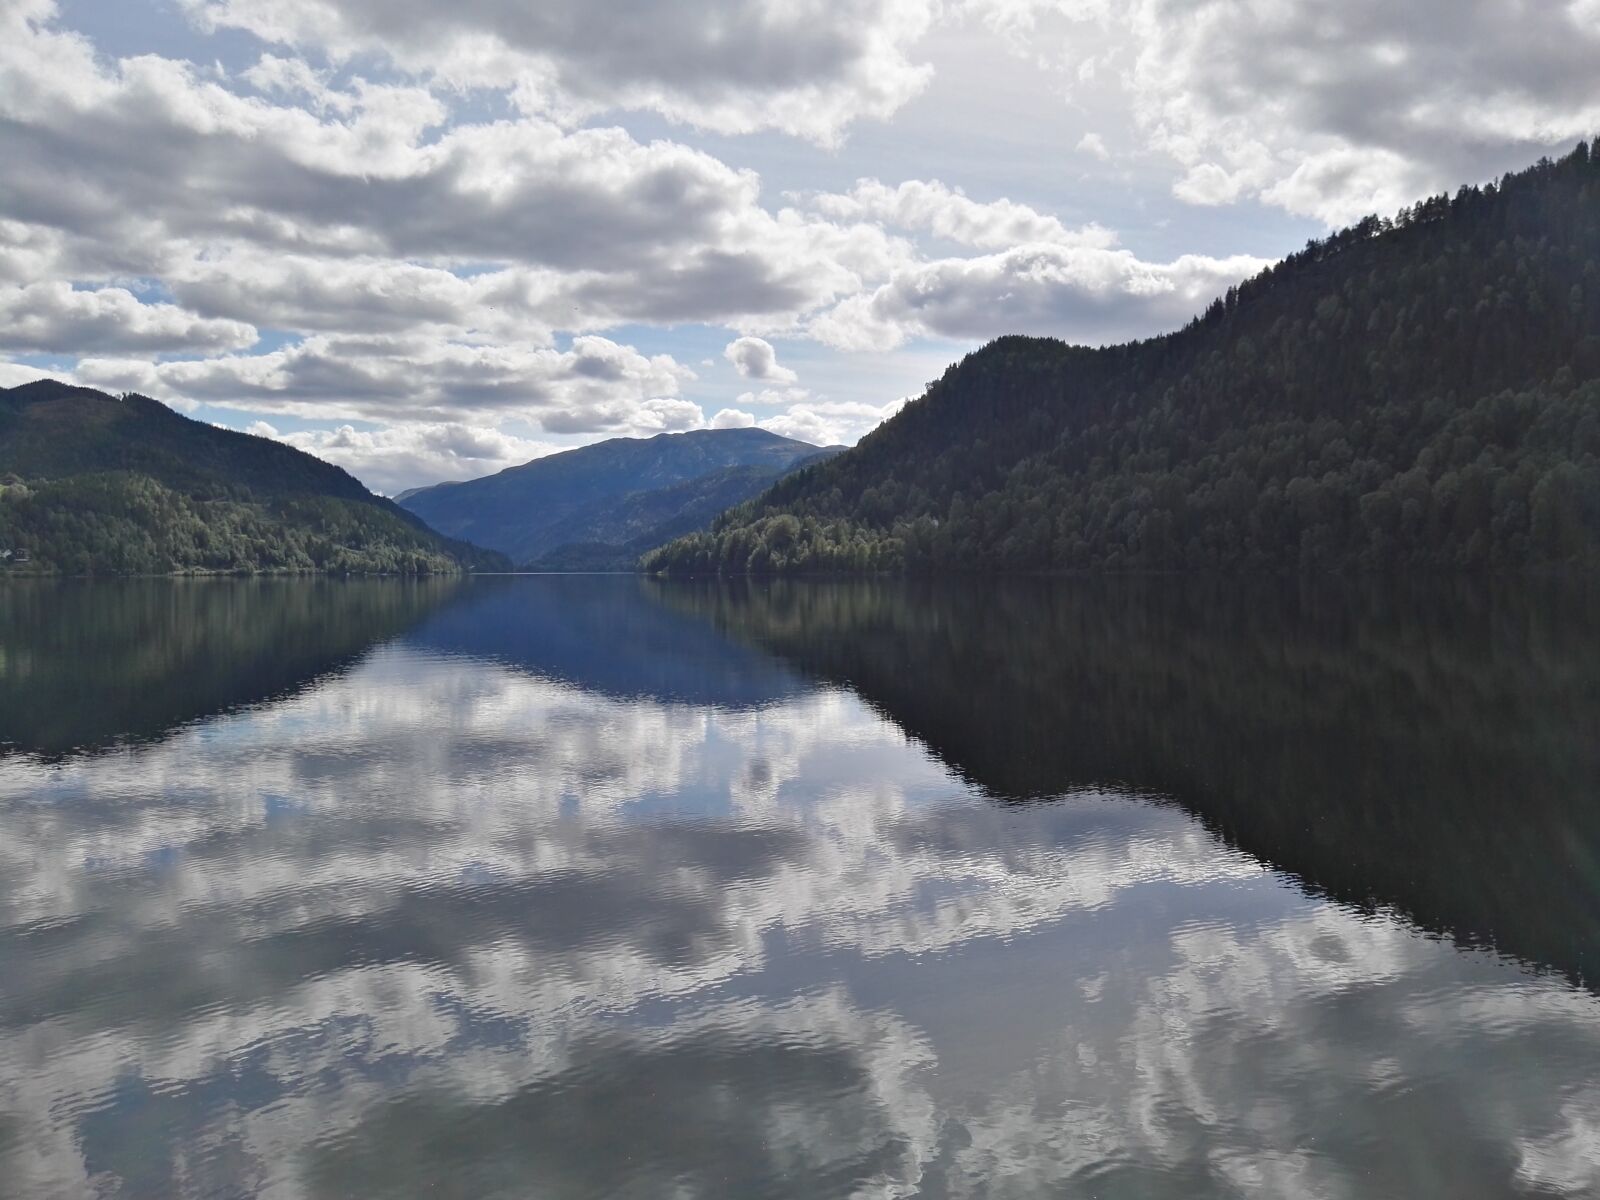 HUAWEI GRA-L09 sample photo. Fjord, lake, water photography